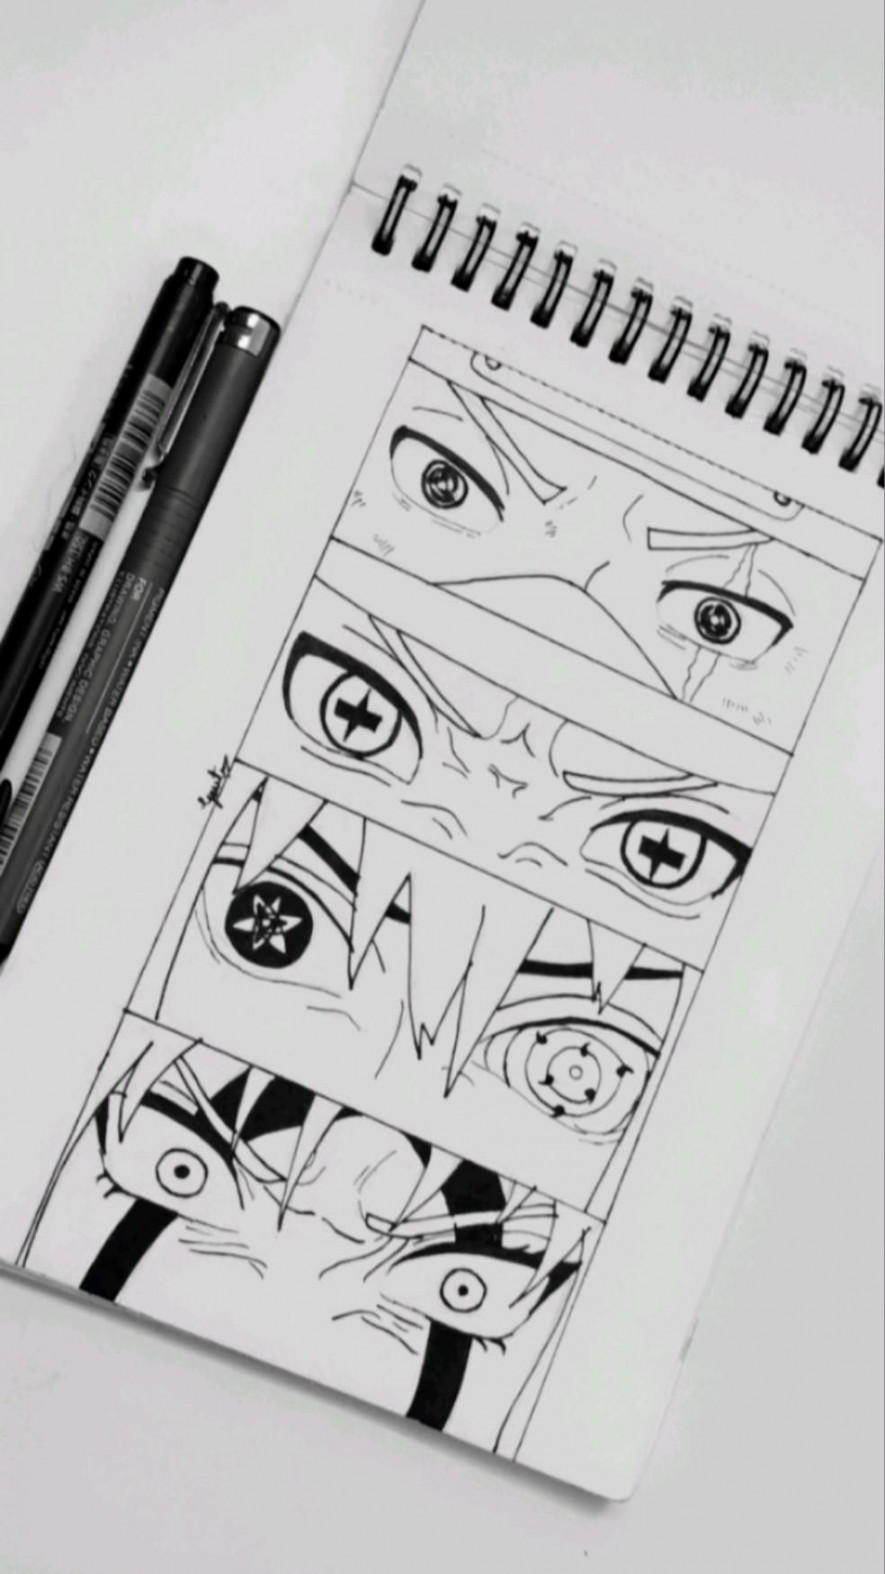 Naruto team eyes drawing  Coloring book art, Naruto drawings